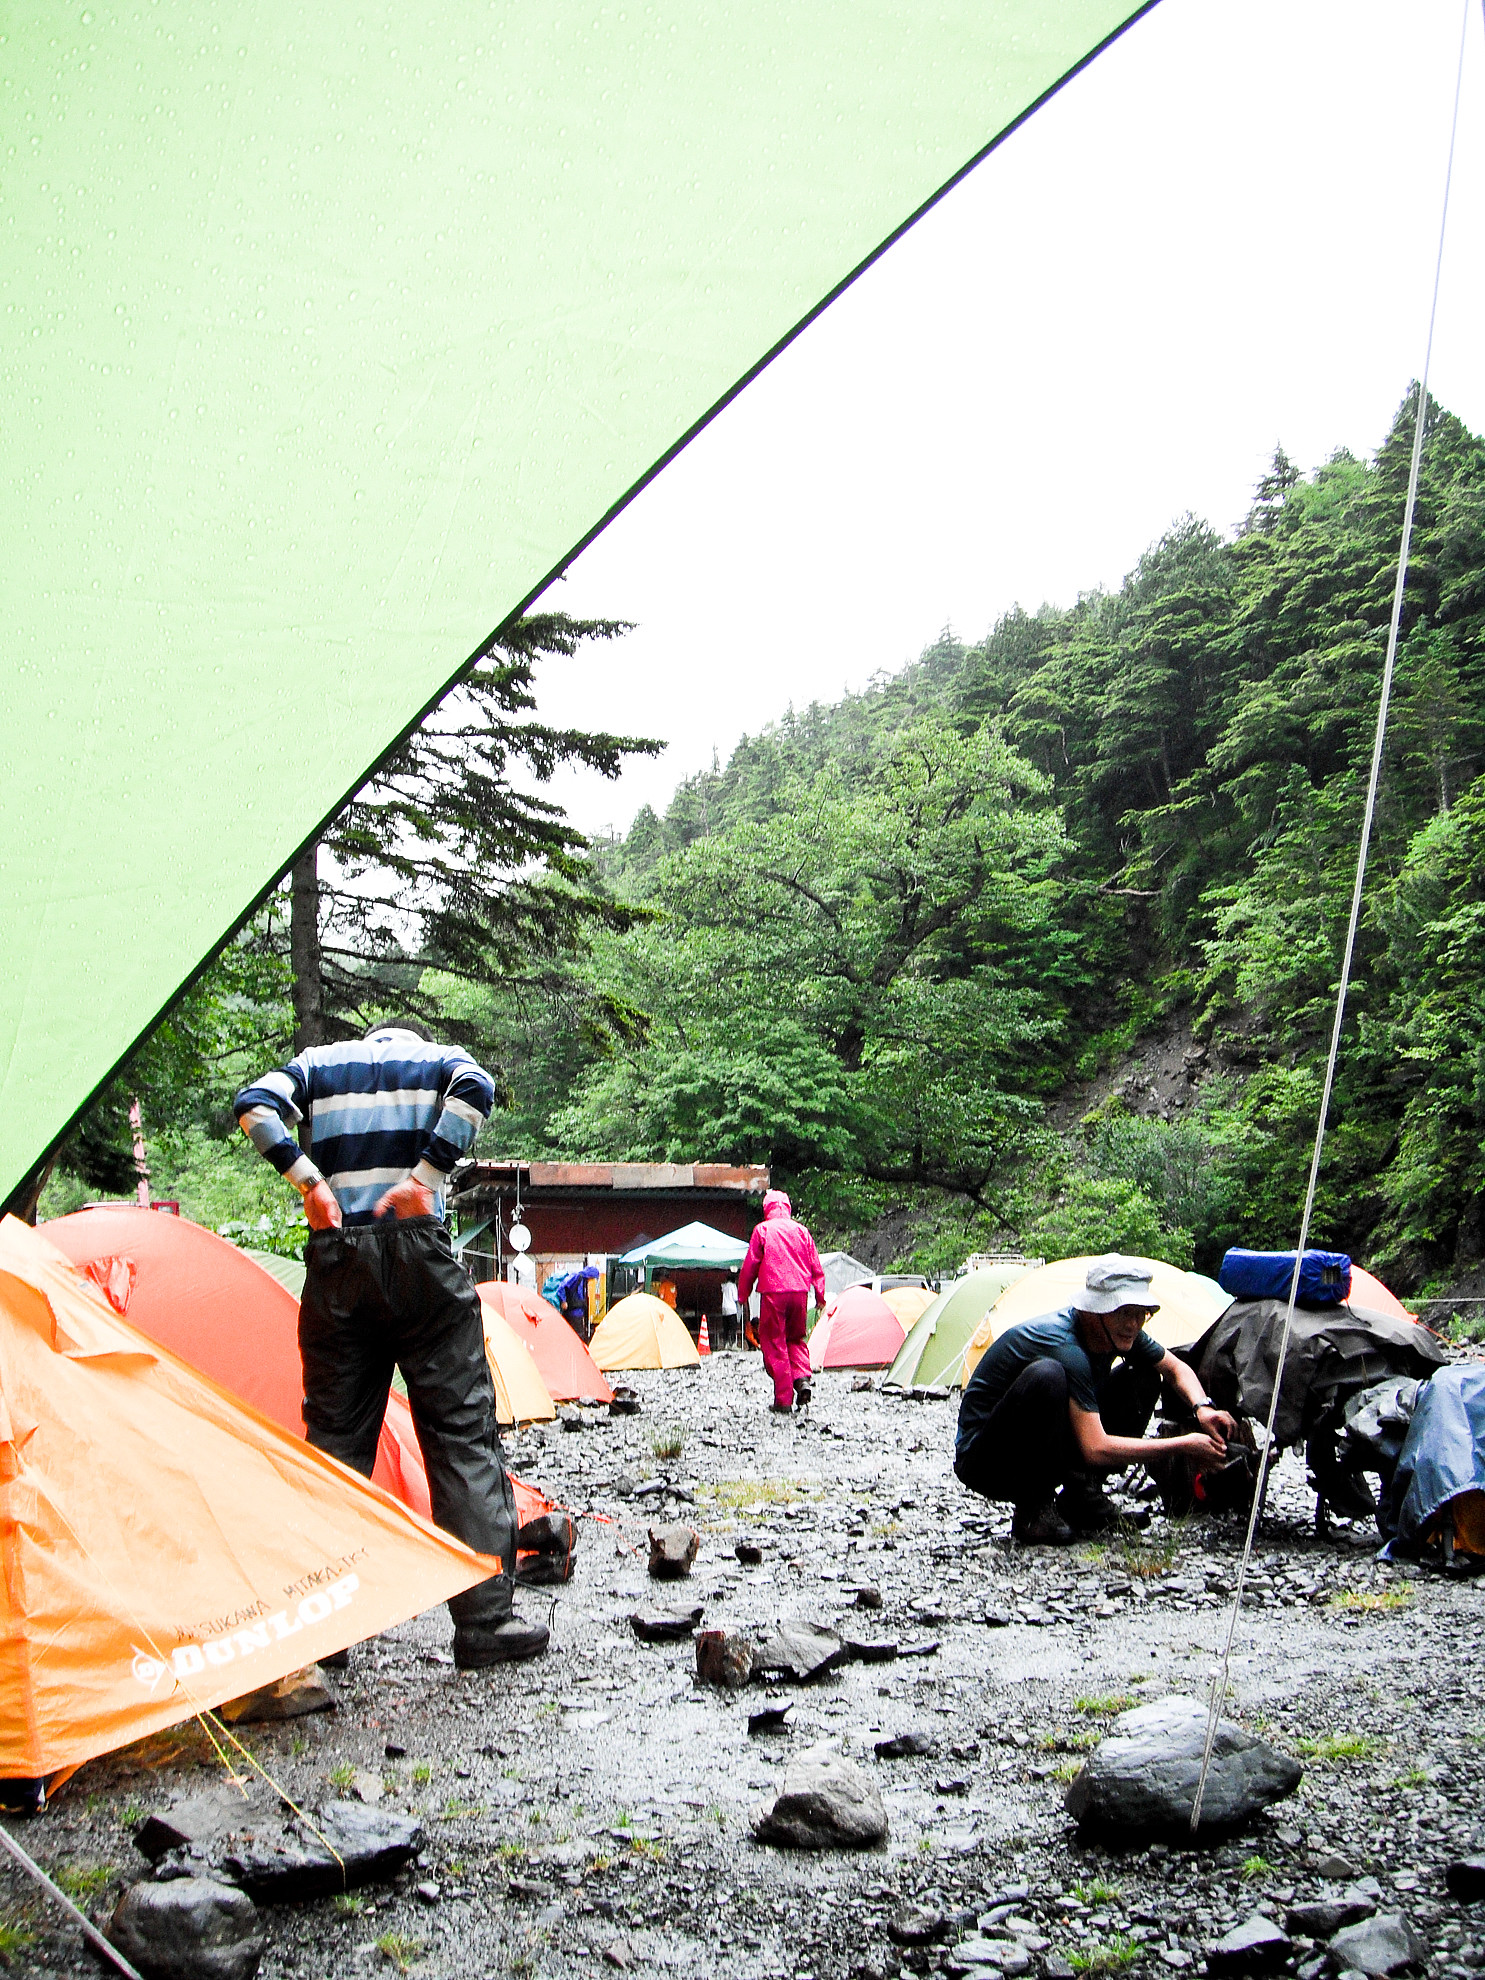 初めてのテント泊-必要な山の道具・覚えておきたいテント泊の方法とルール